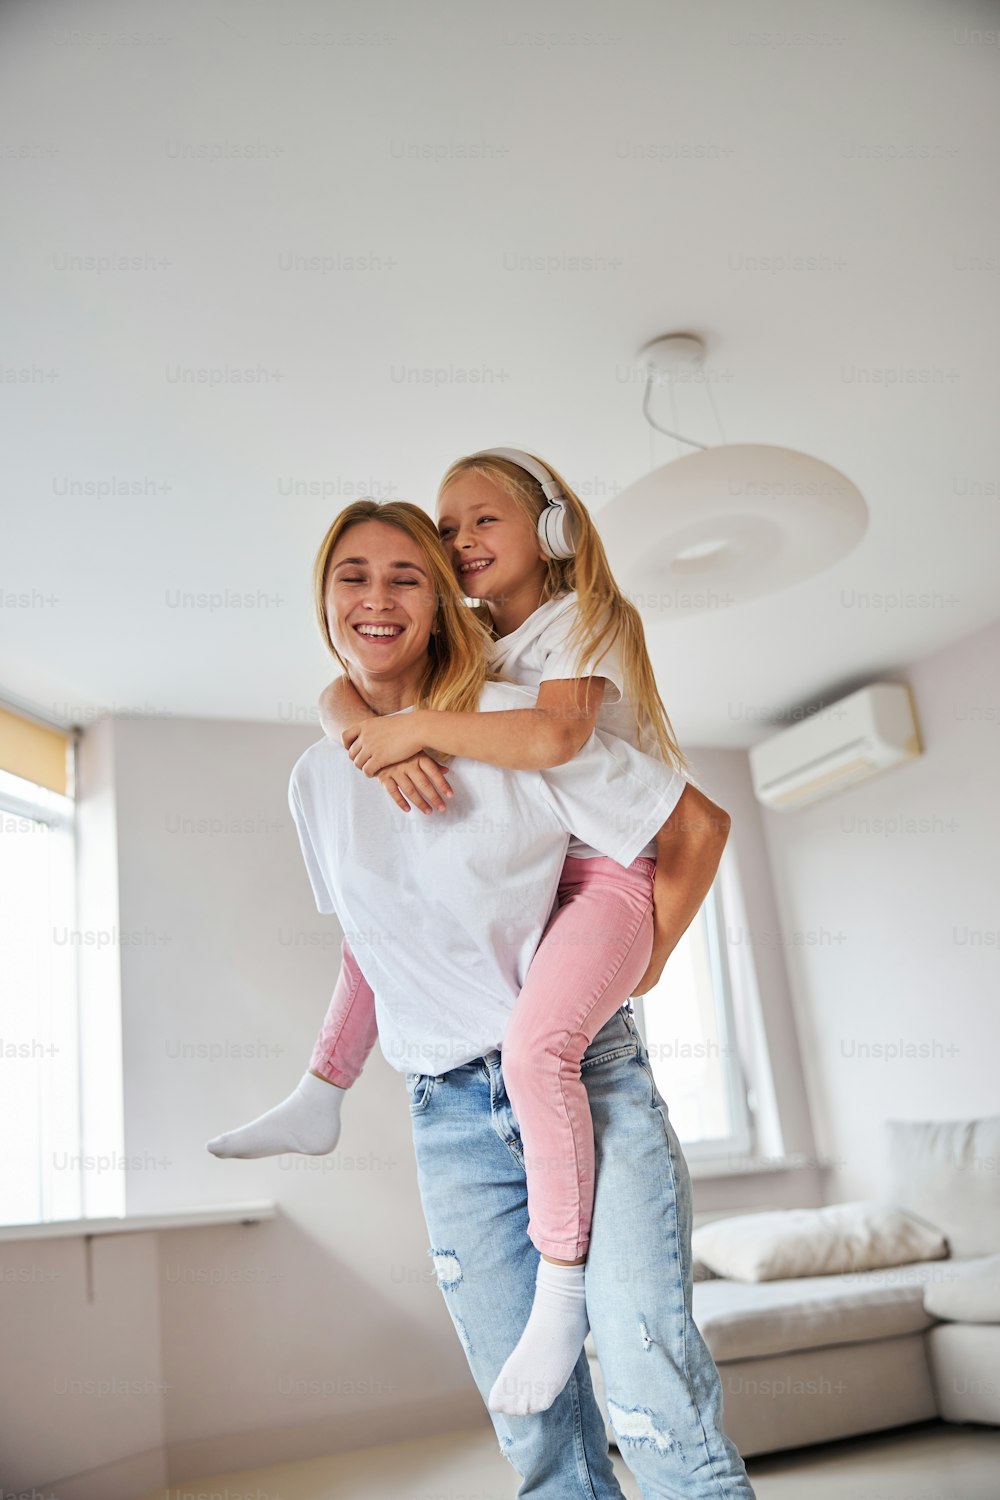 흰 셔츠와 청바지를 입은 행복한 쾌활한 젊은 엄마가 주말에 집에서 시간을 보내는 동안 어린 딸을 등에 안고 있다